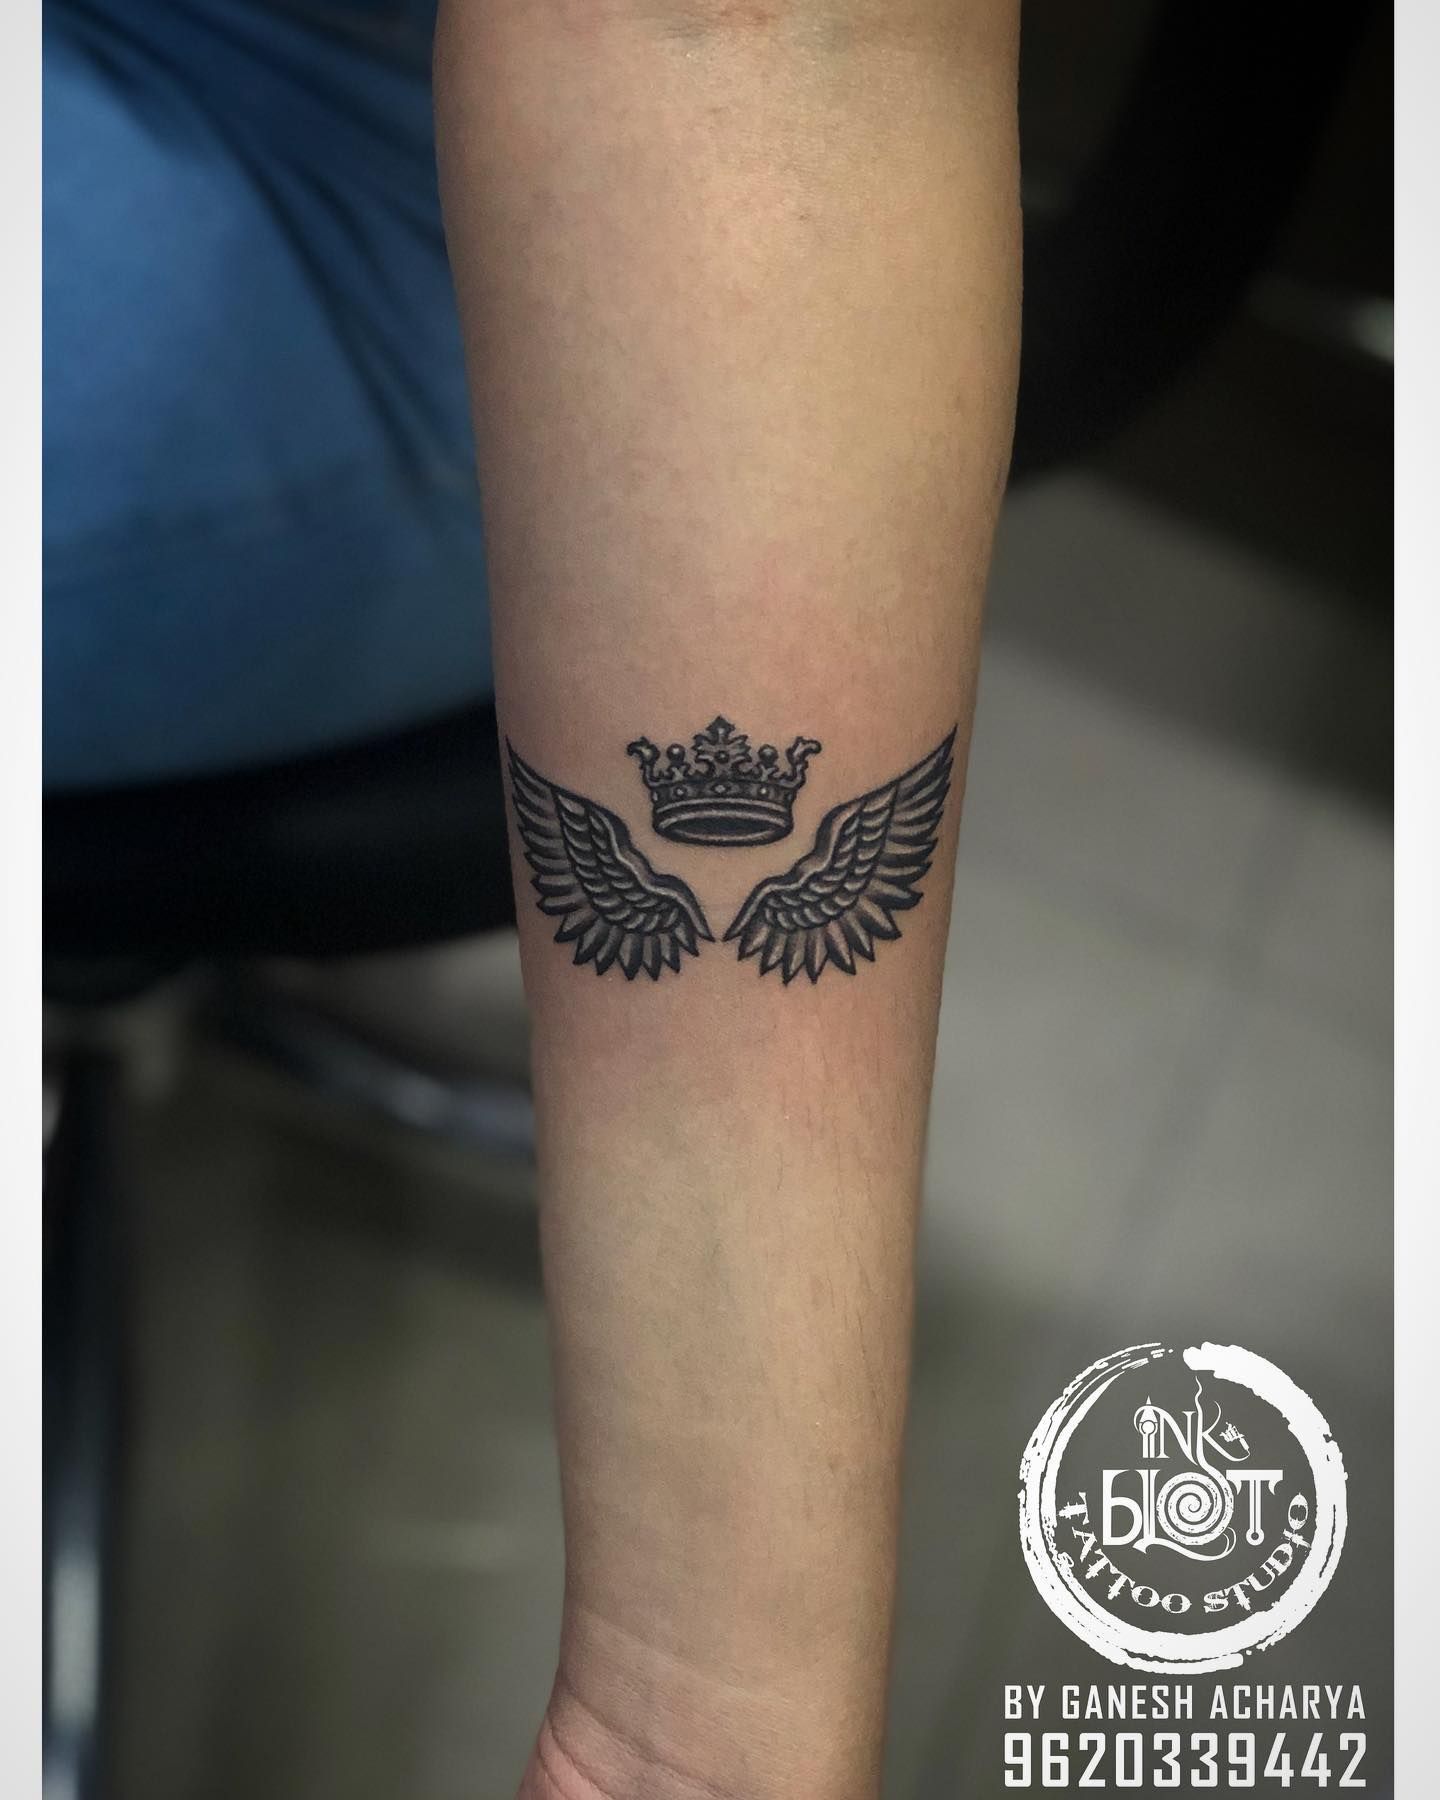 shree tattoo colors tattoo artist@aditya koley Bangalore 8970117778 |  Tattoos, Color tattoo, Tattoo designs men